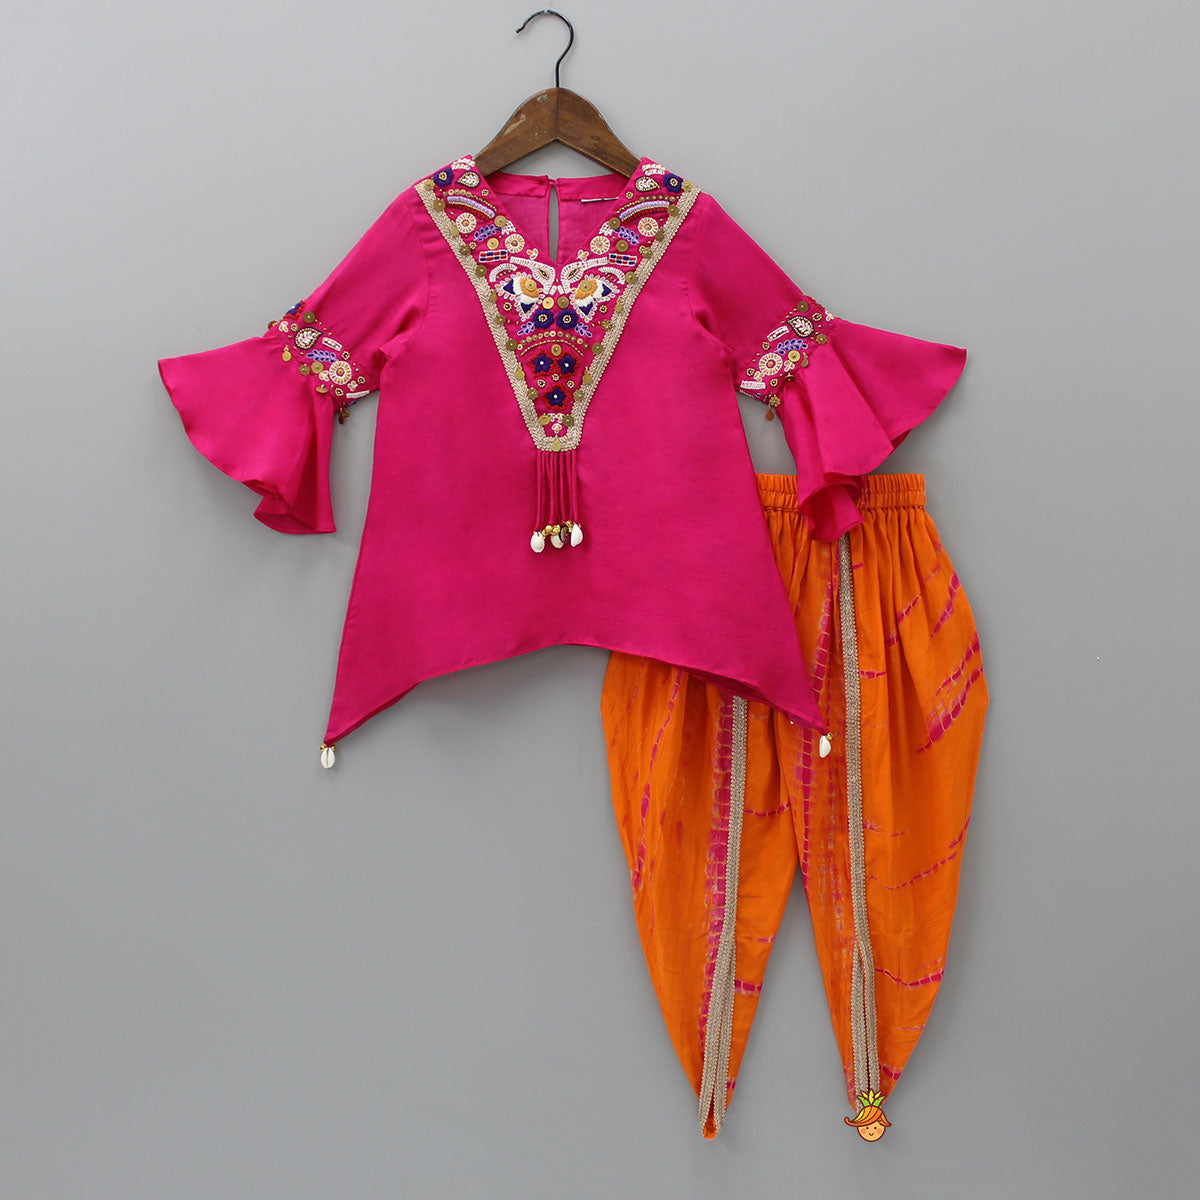 Hanging Tassels Enhanced Pink Top And Shibori Printed Dhoti